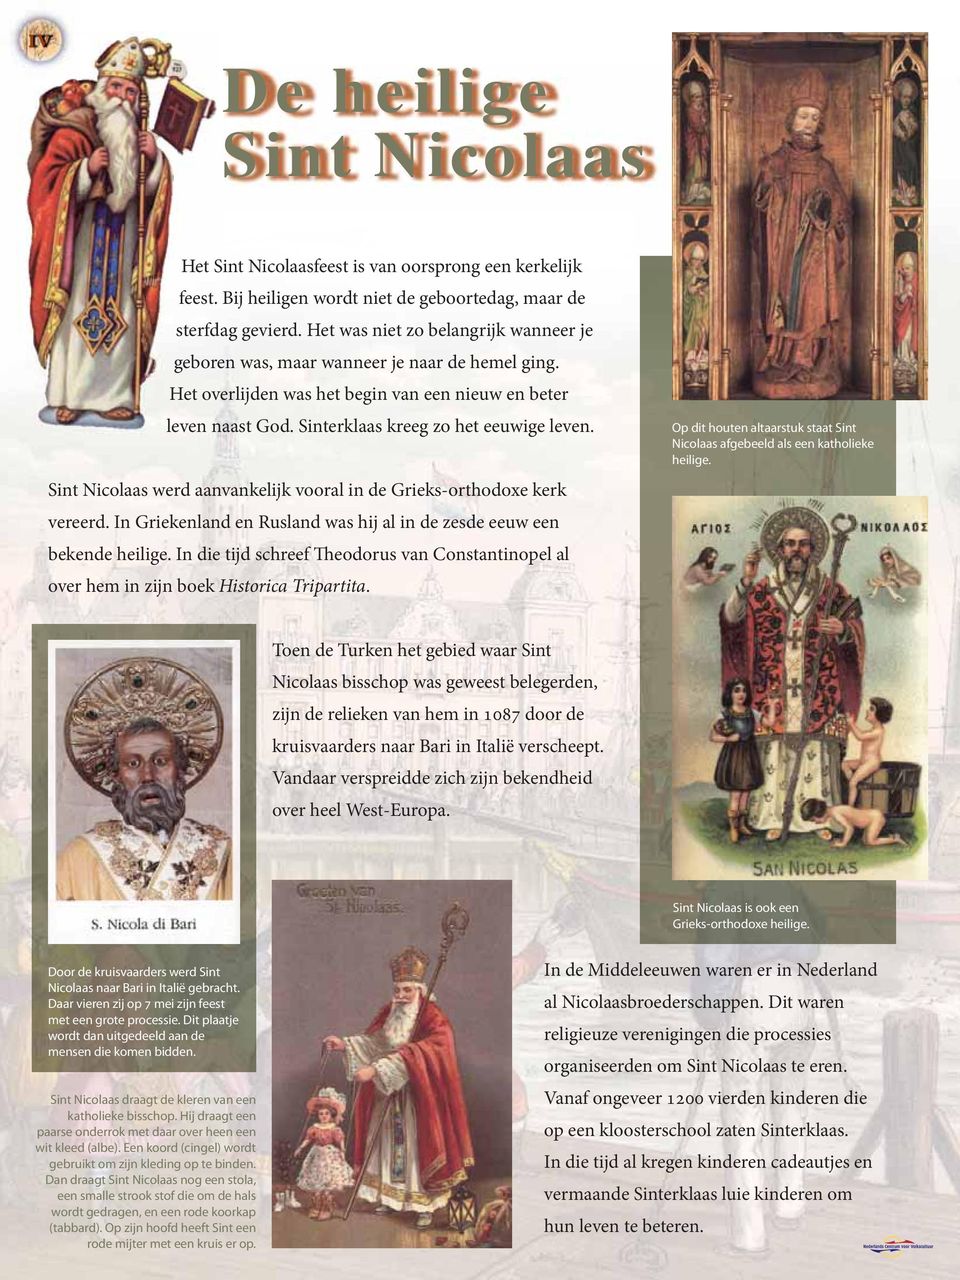 Sint Nicolaas werd aanvankelijk vooral in de Grieks-orthodoxe kerk vereerd. In Griekenland en Rusland was hij al in de zesde eeuw een bekende heilige.